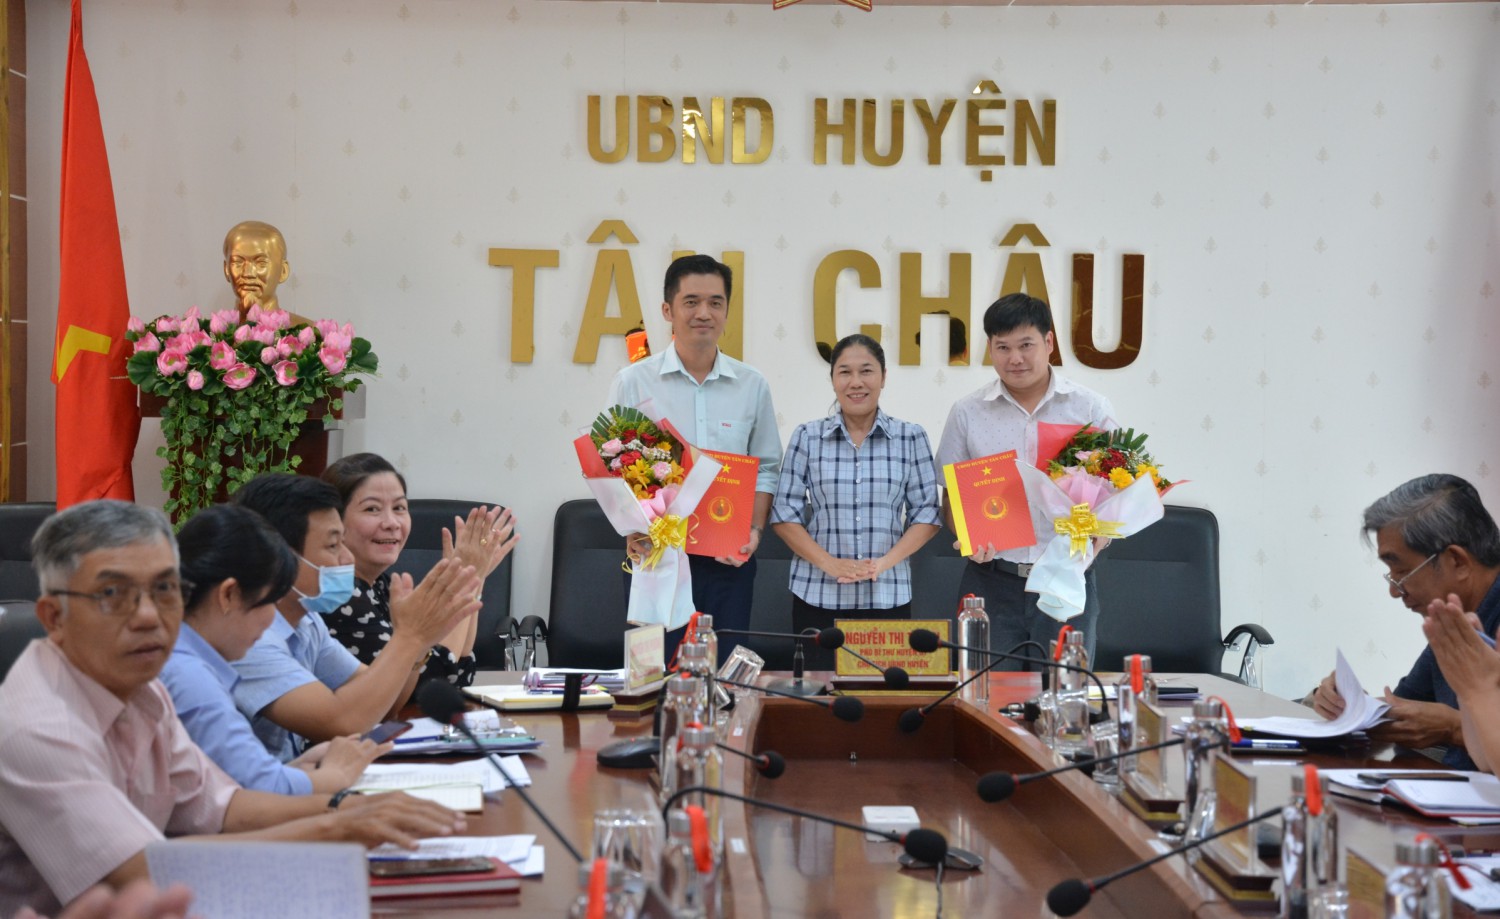 UBND huyện Tân Châu công bố các quyết định điều động, tiếp nhận và bổ nhiệm cán bộ